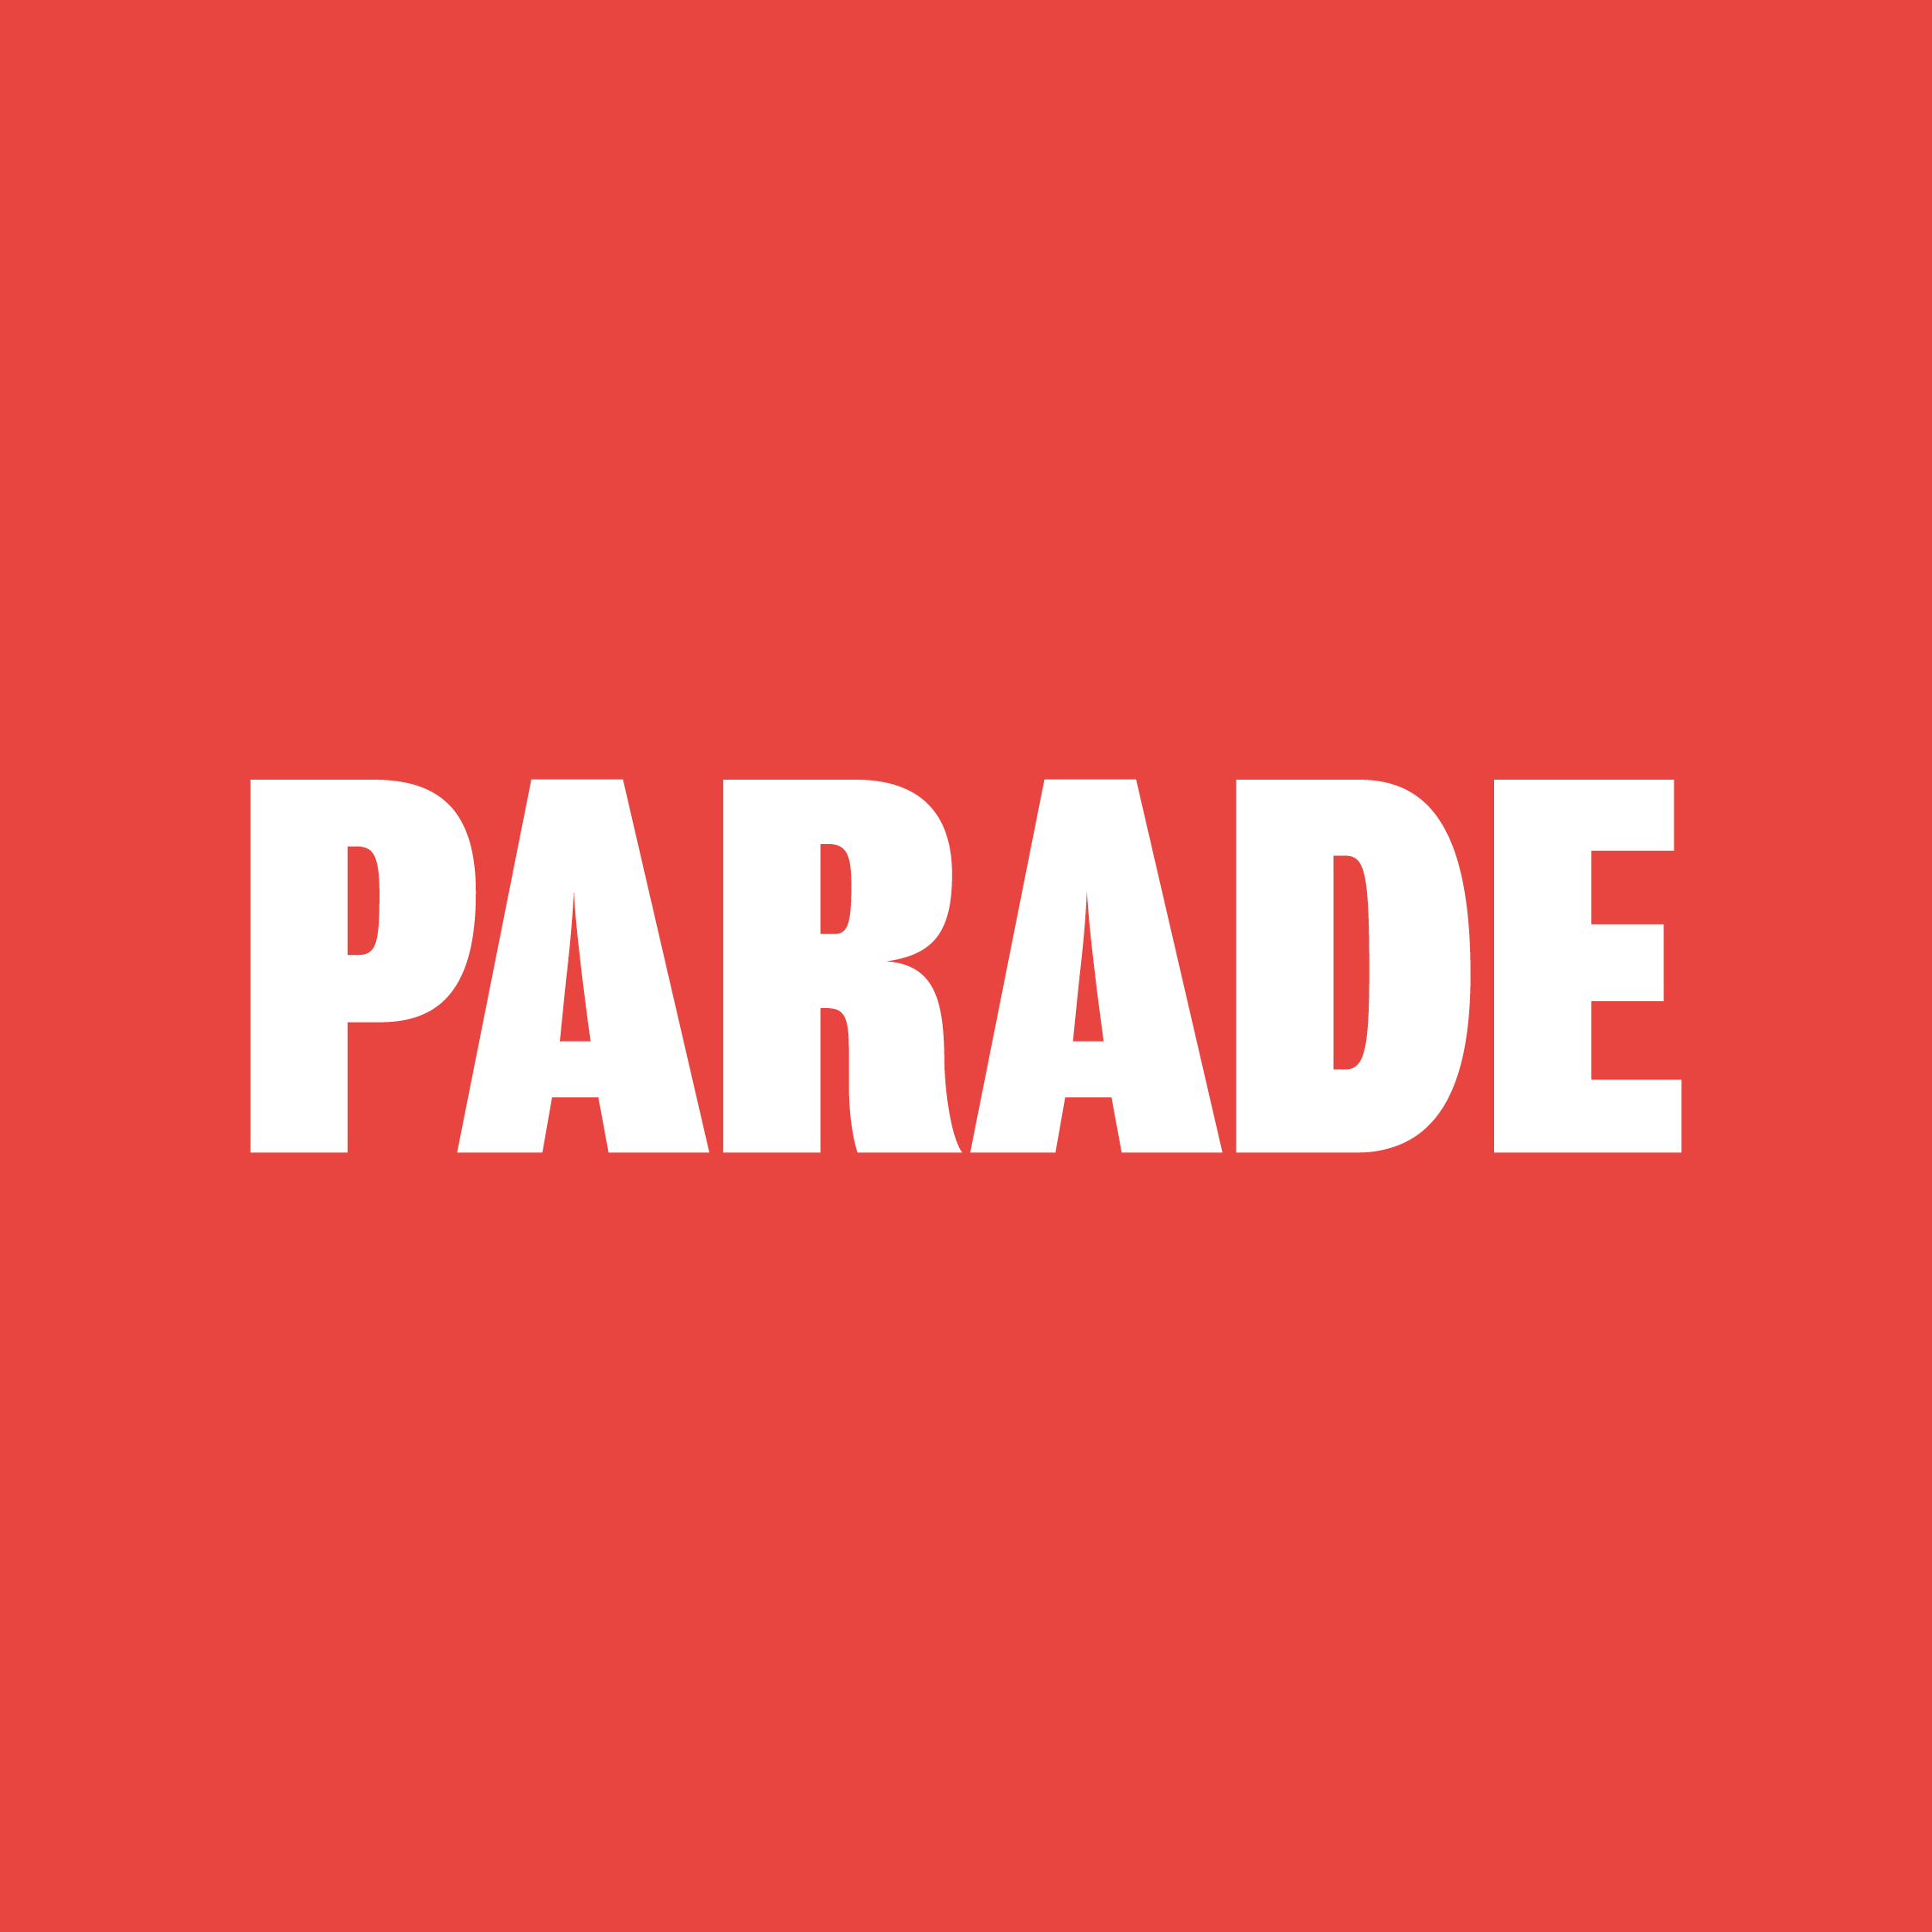 Parade.png